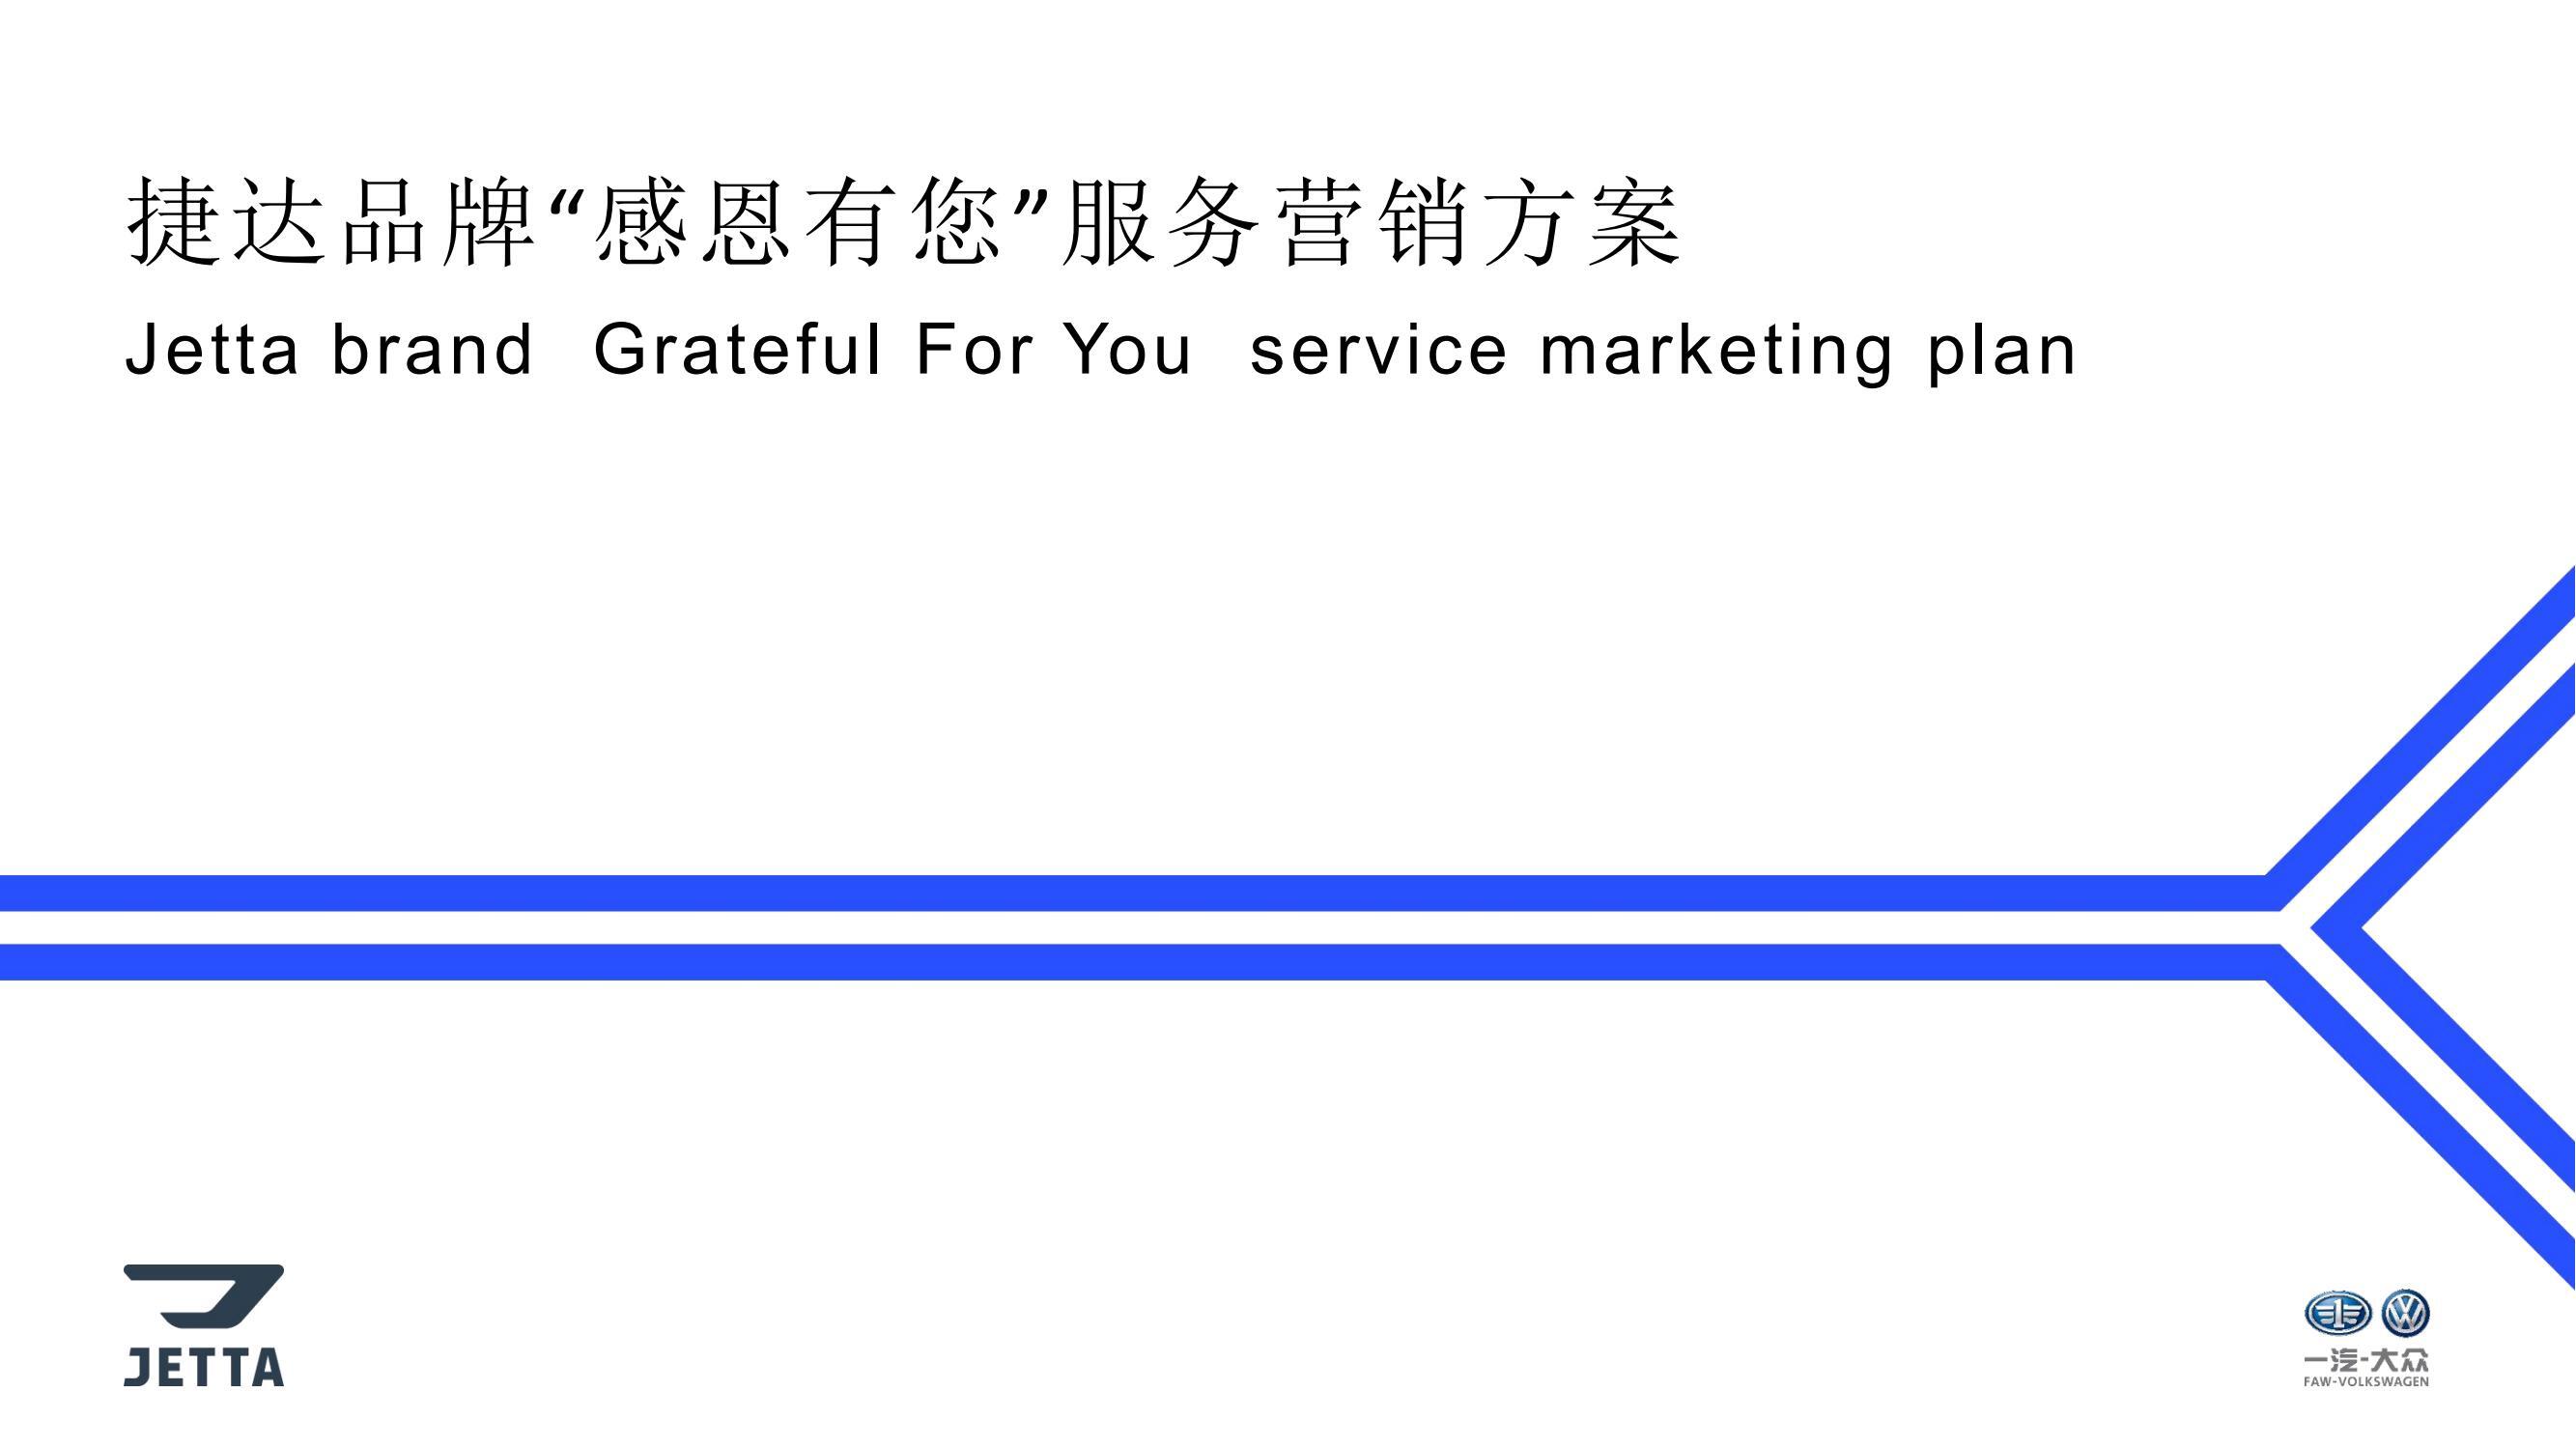 捷达品牌「感恩有您」服务营销应标方案